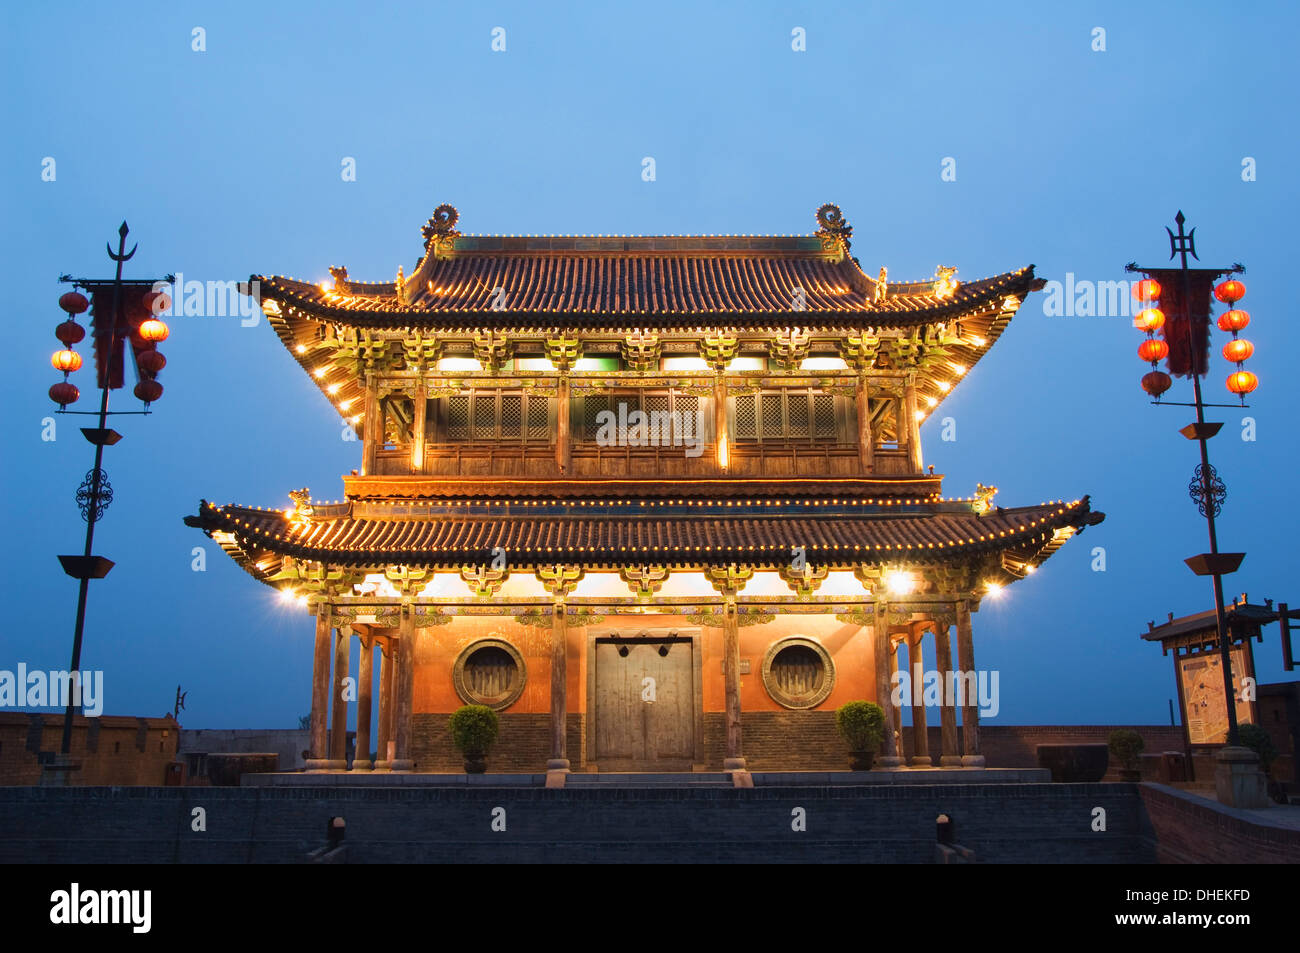 Torre di Porta sull'ultima rimasta intatta la dinastia Ming parete della città in Cina, città di Pingyao, UNESCO, nella provincia di Shanxi, Cina Foto Stock